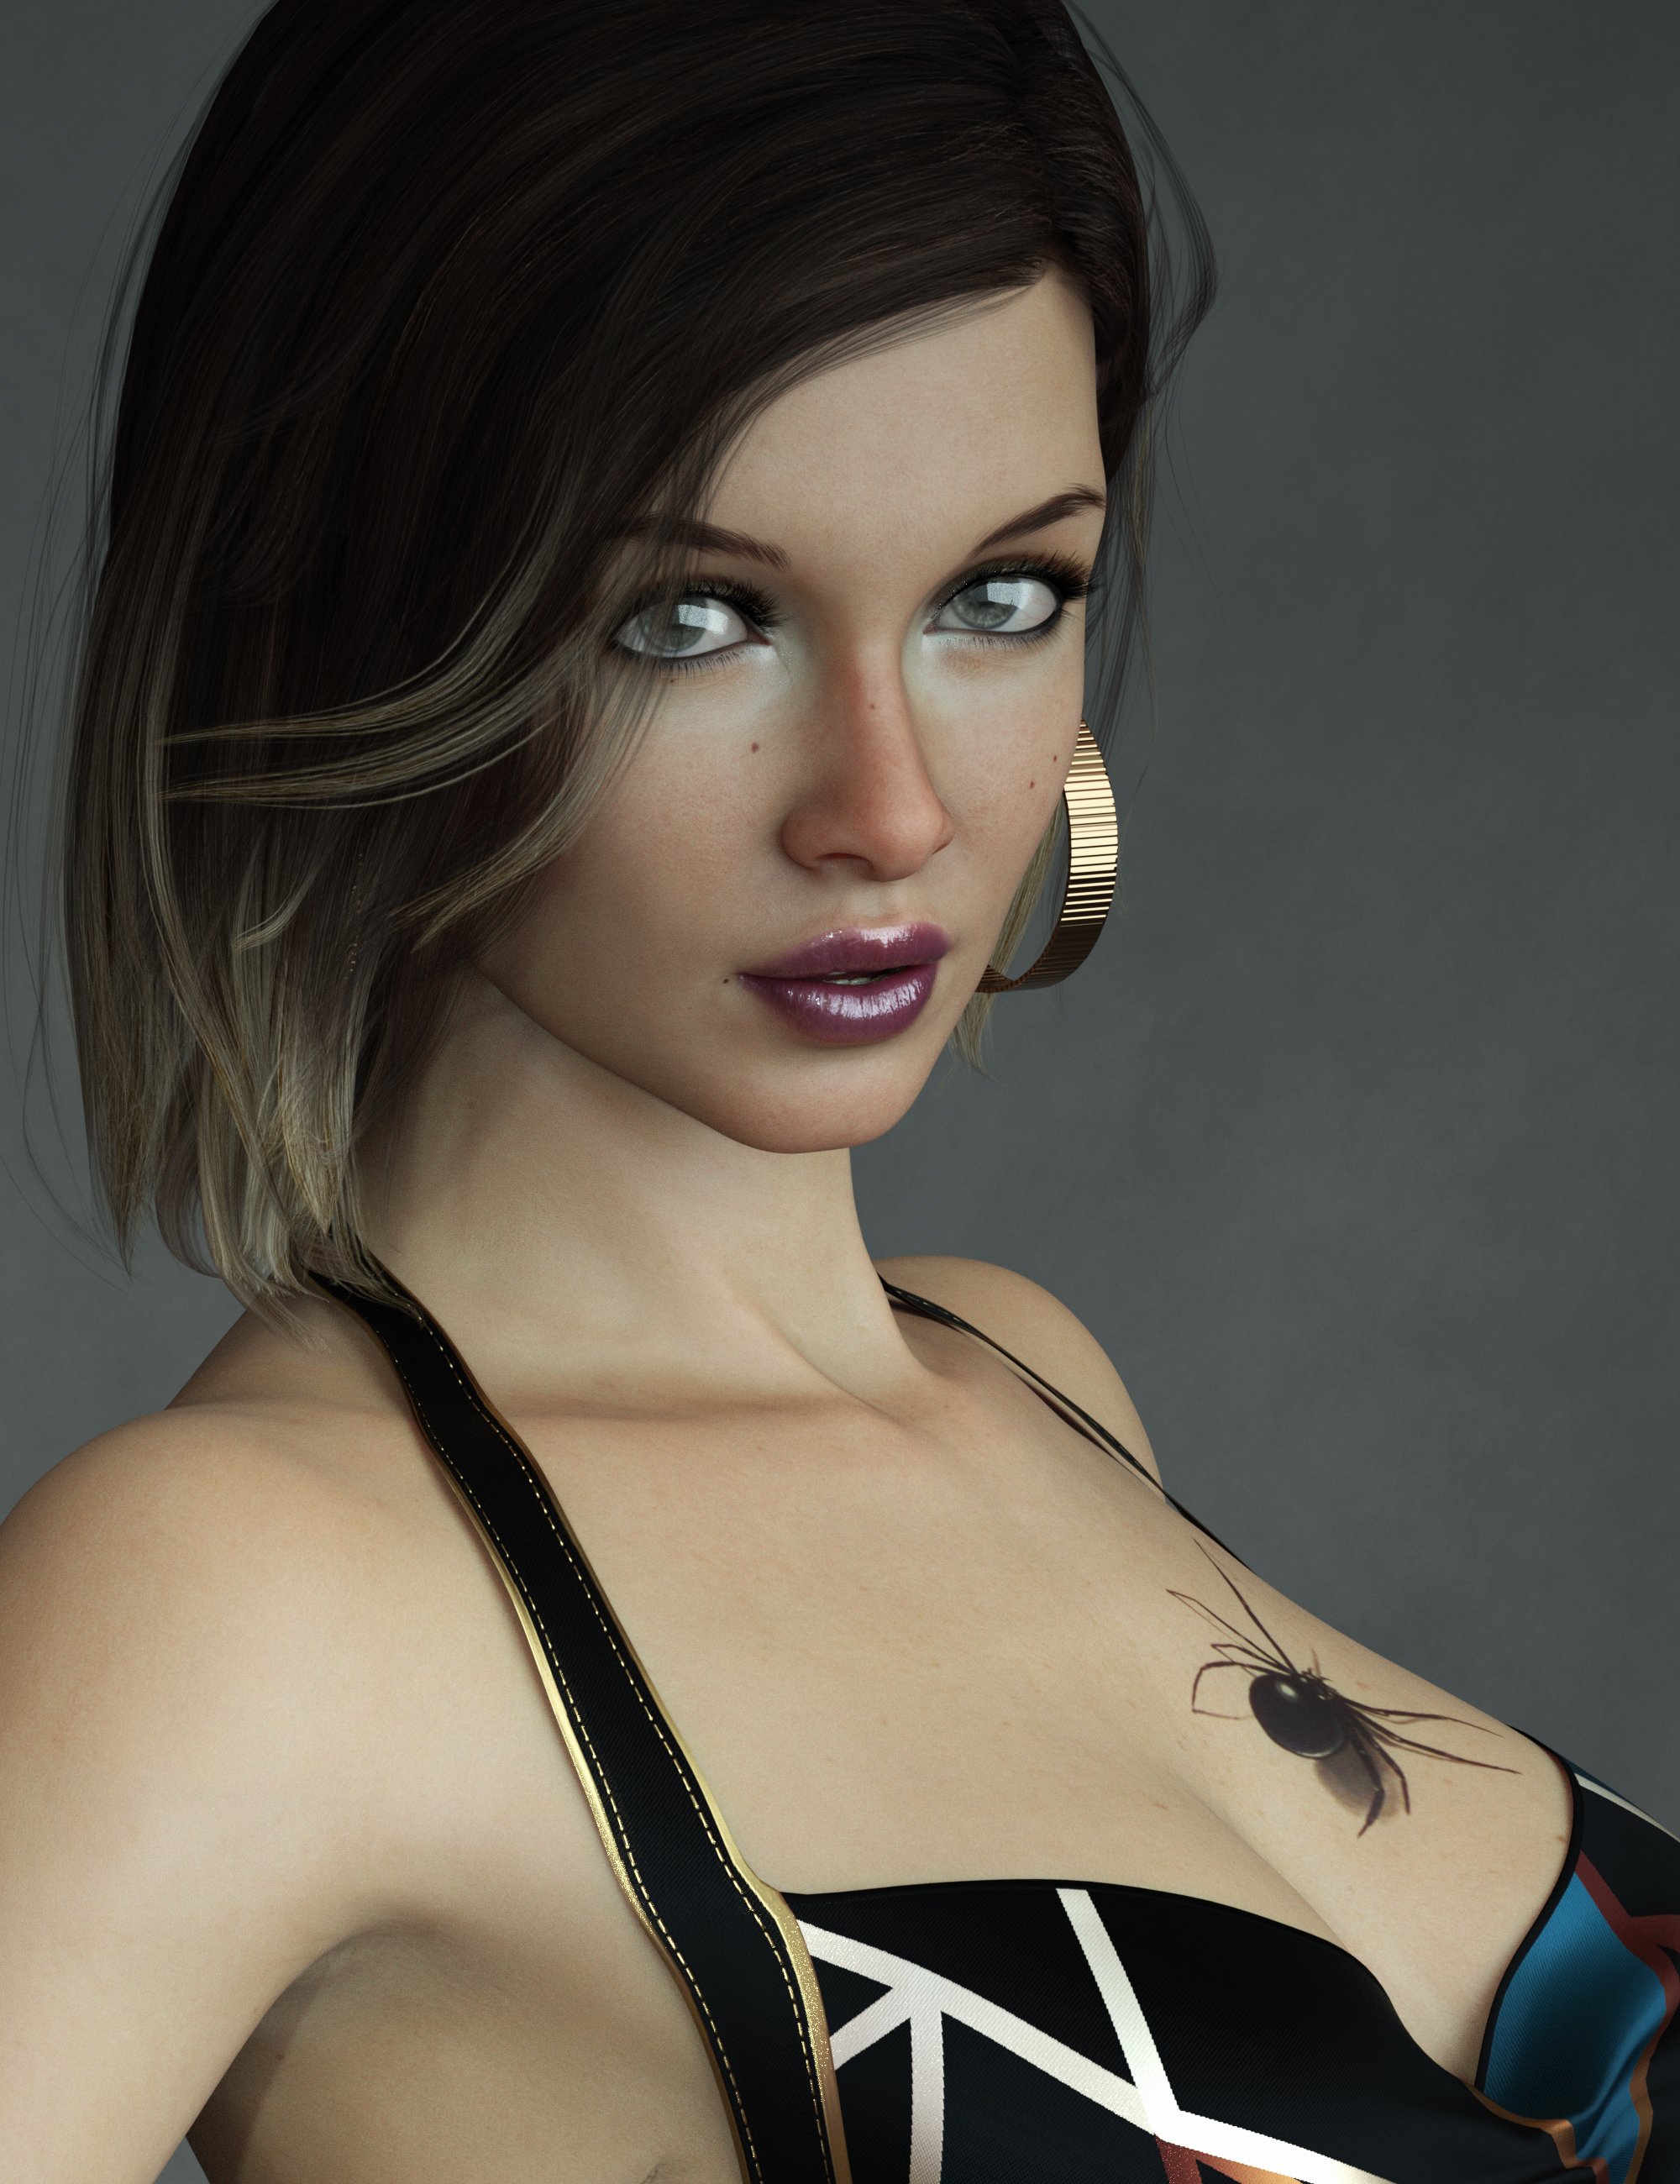 E3D Lilyan HD for Genesis 8.1 Female by: Emrys, 3D Models by Daz 3D